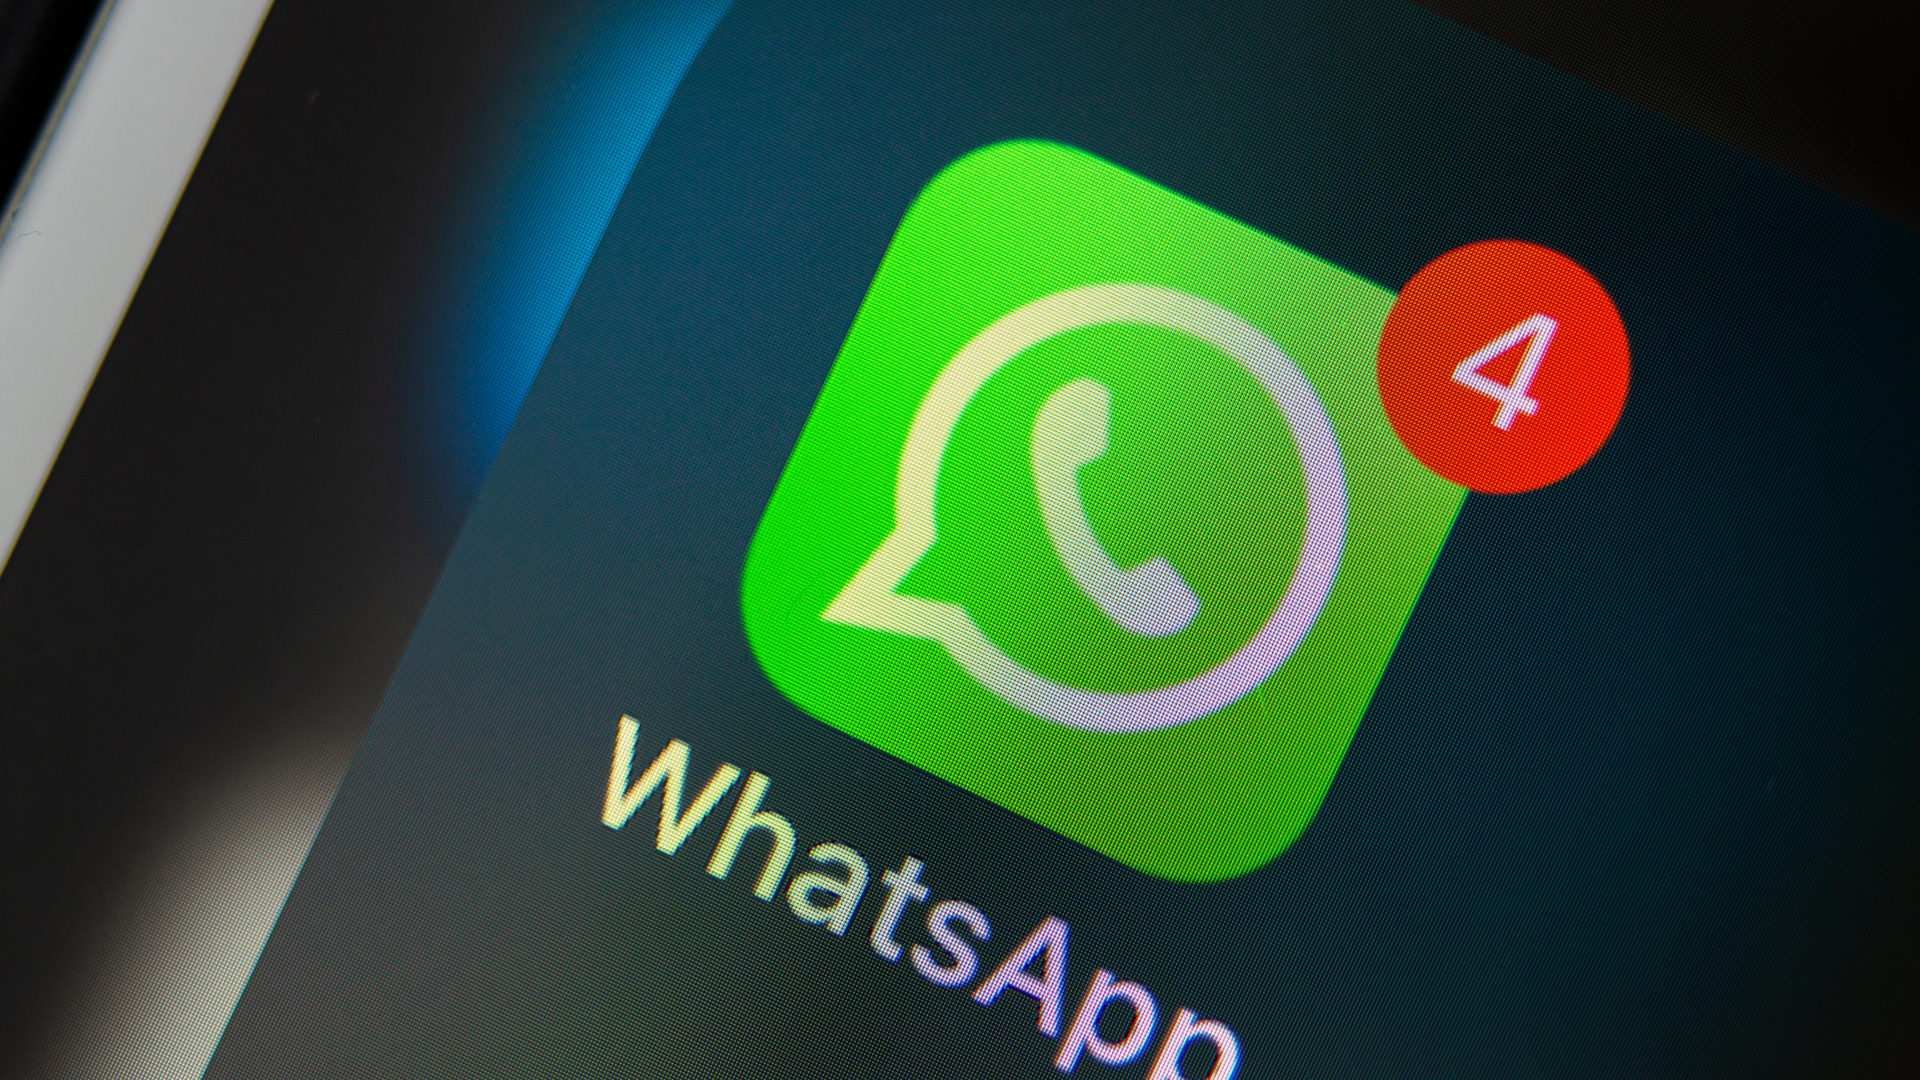 Internautas celebram chegada das reações no WhatsApp